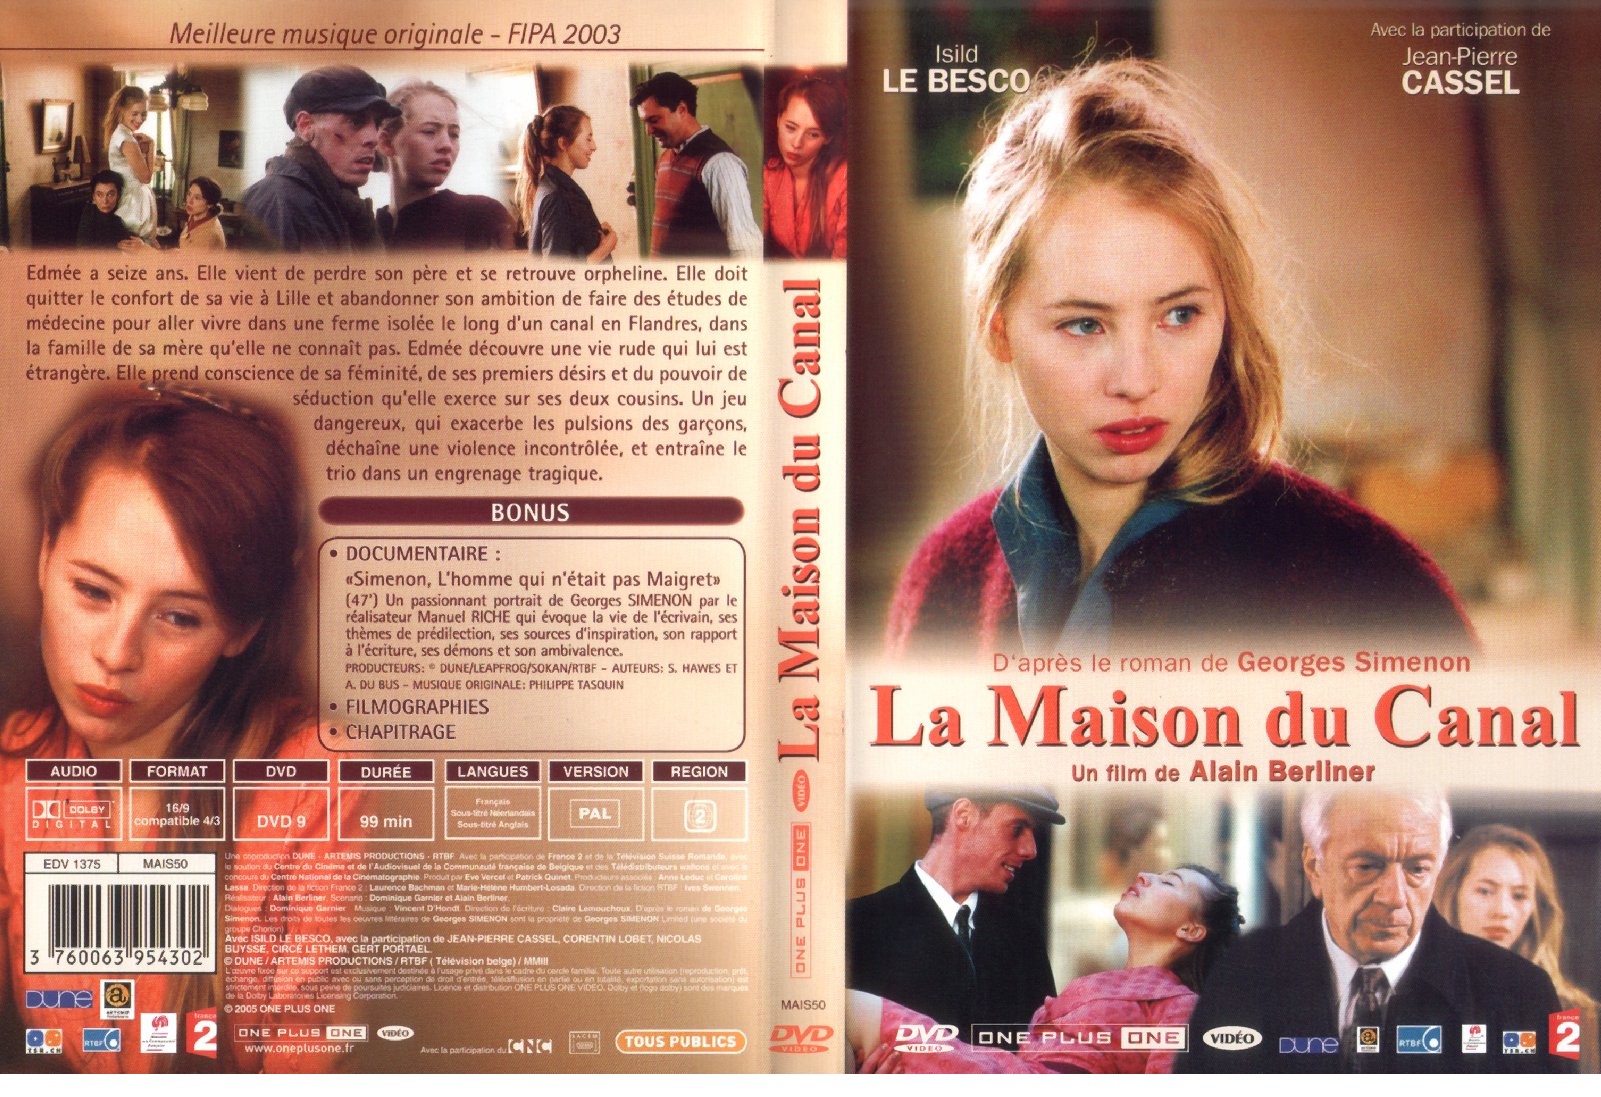 Jaquette Dvd De La Maison Du Canal Cinéma Passion